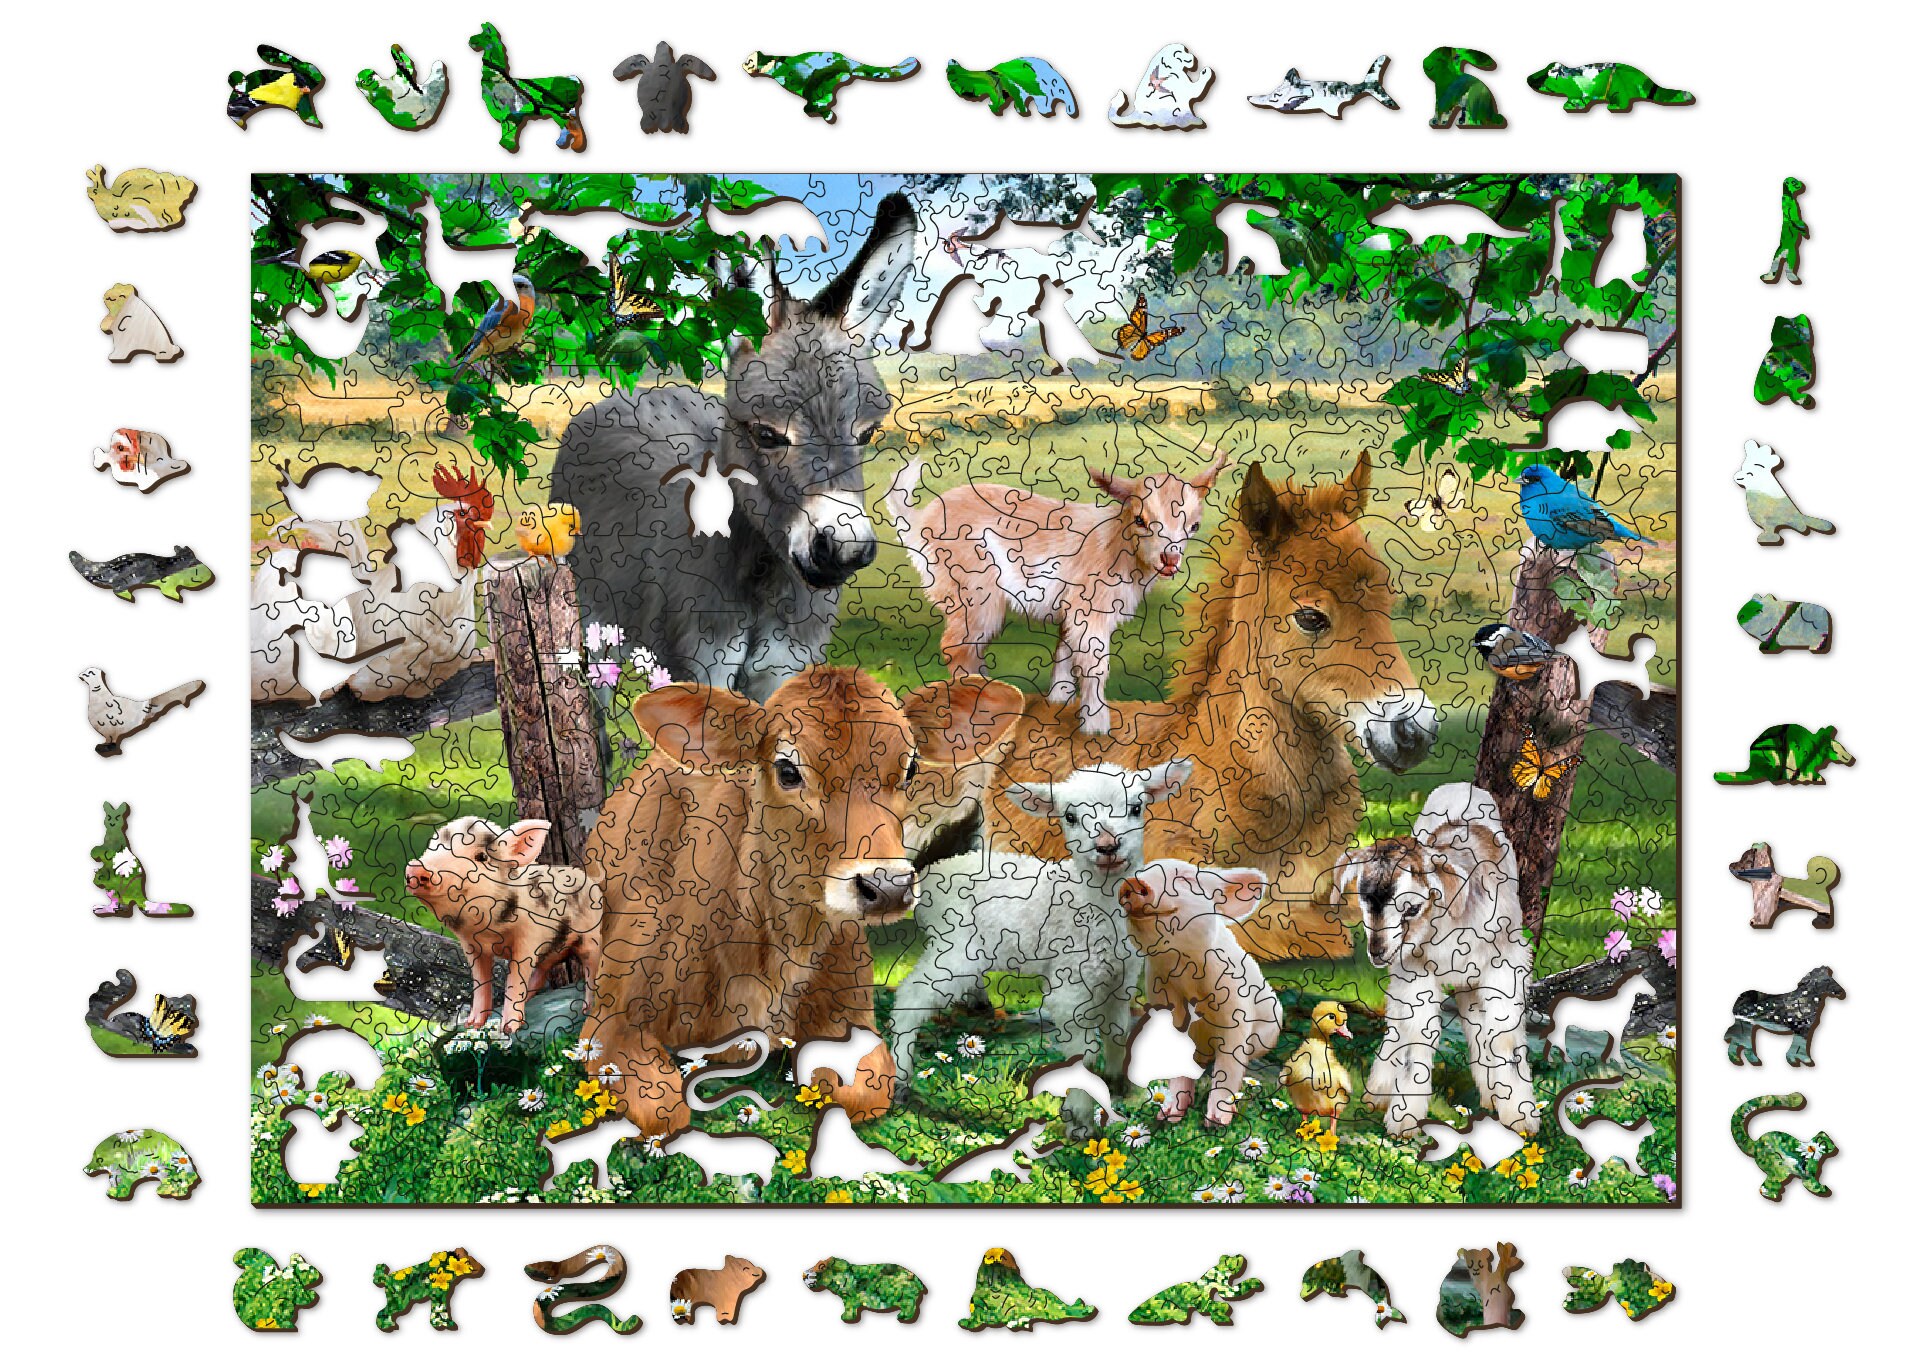 Ensemble de 6 puzzles en bois animaux Stillcool pour enfants de 2 à 5 ans